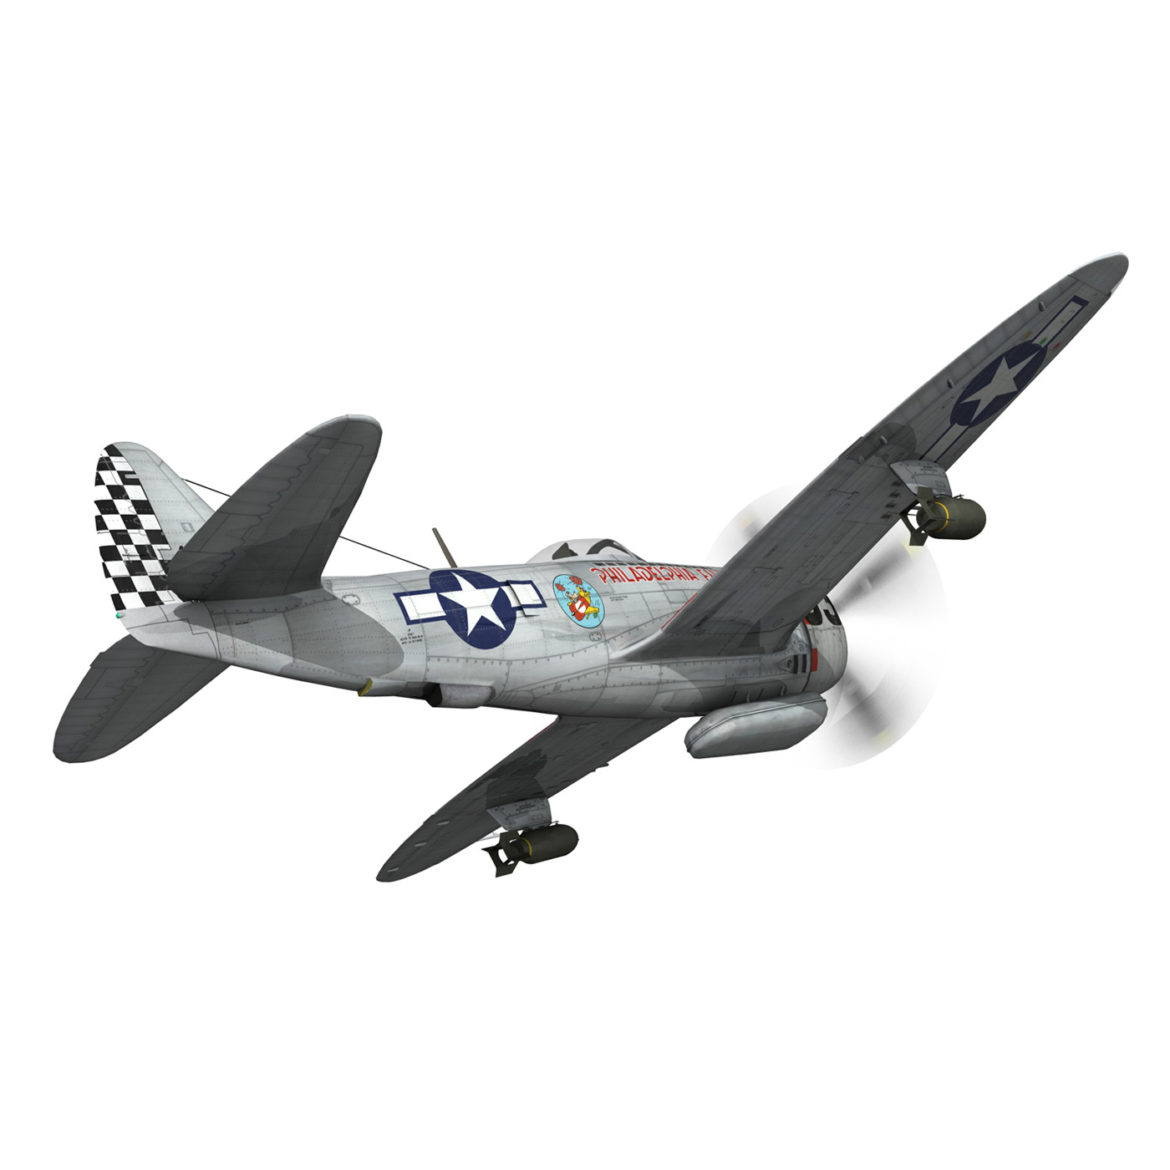 republic p-47d thunderbolt – torrid tessie 3d model 3ds c4d lwo lw lws obj fbx 303867